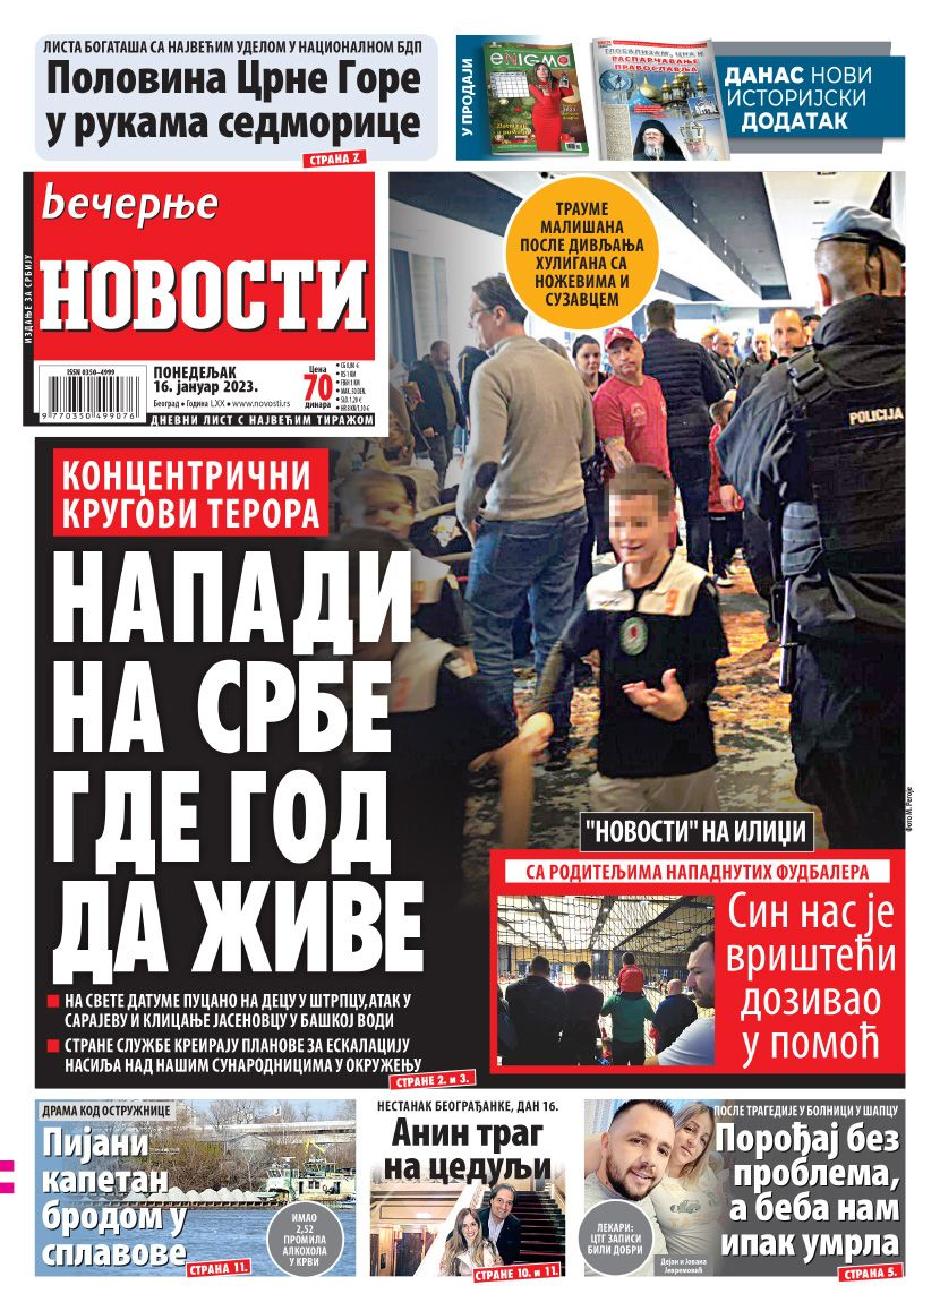 Naslovnice - Page 10 Novosti_1311x940